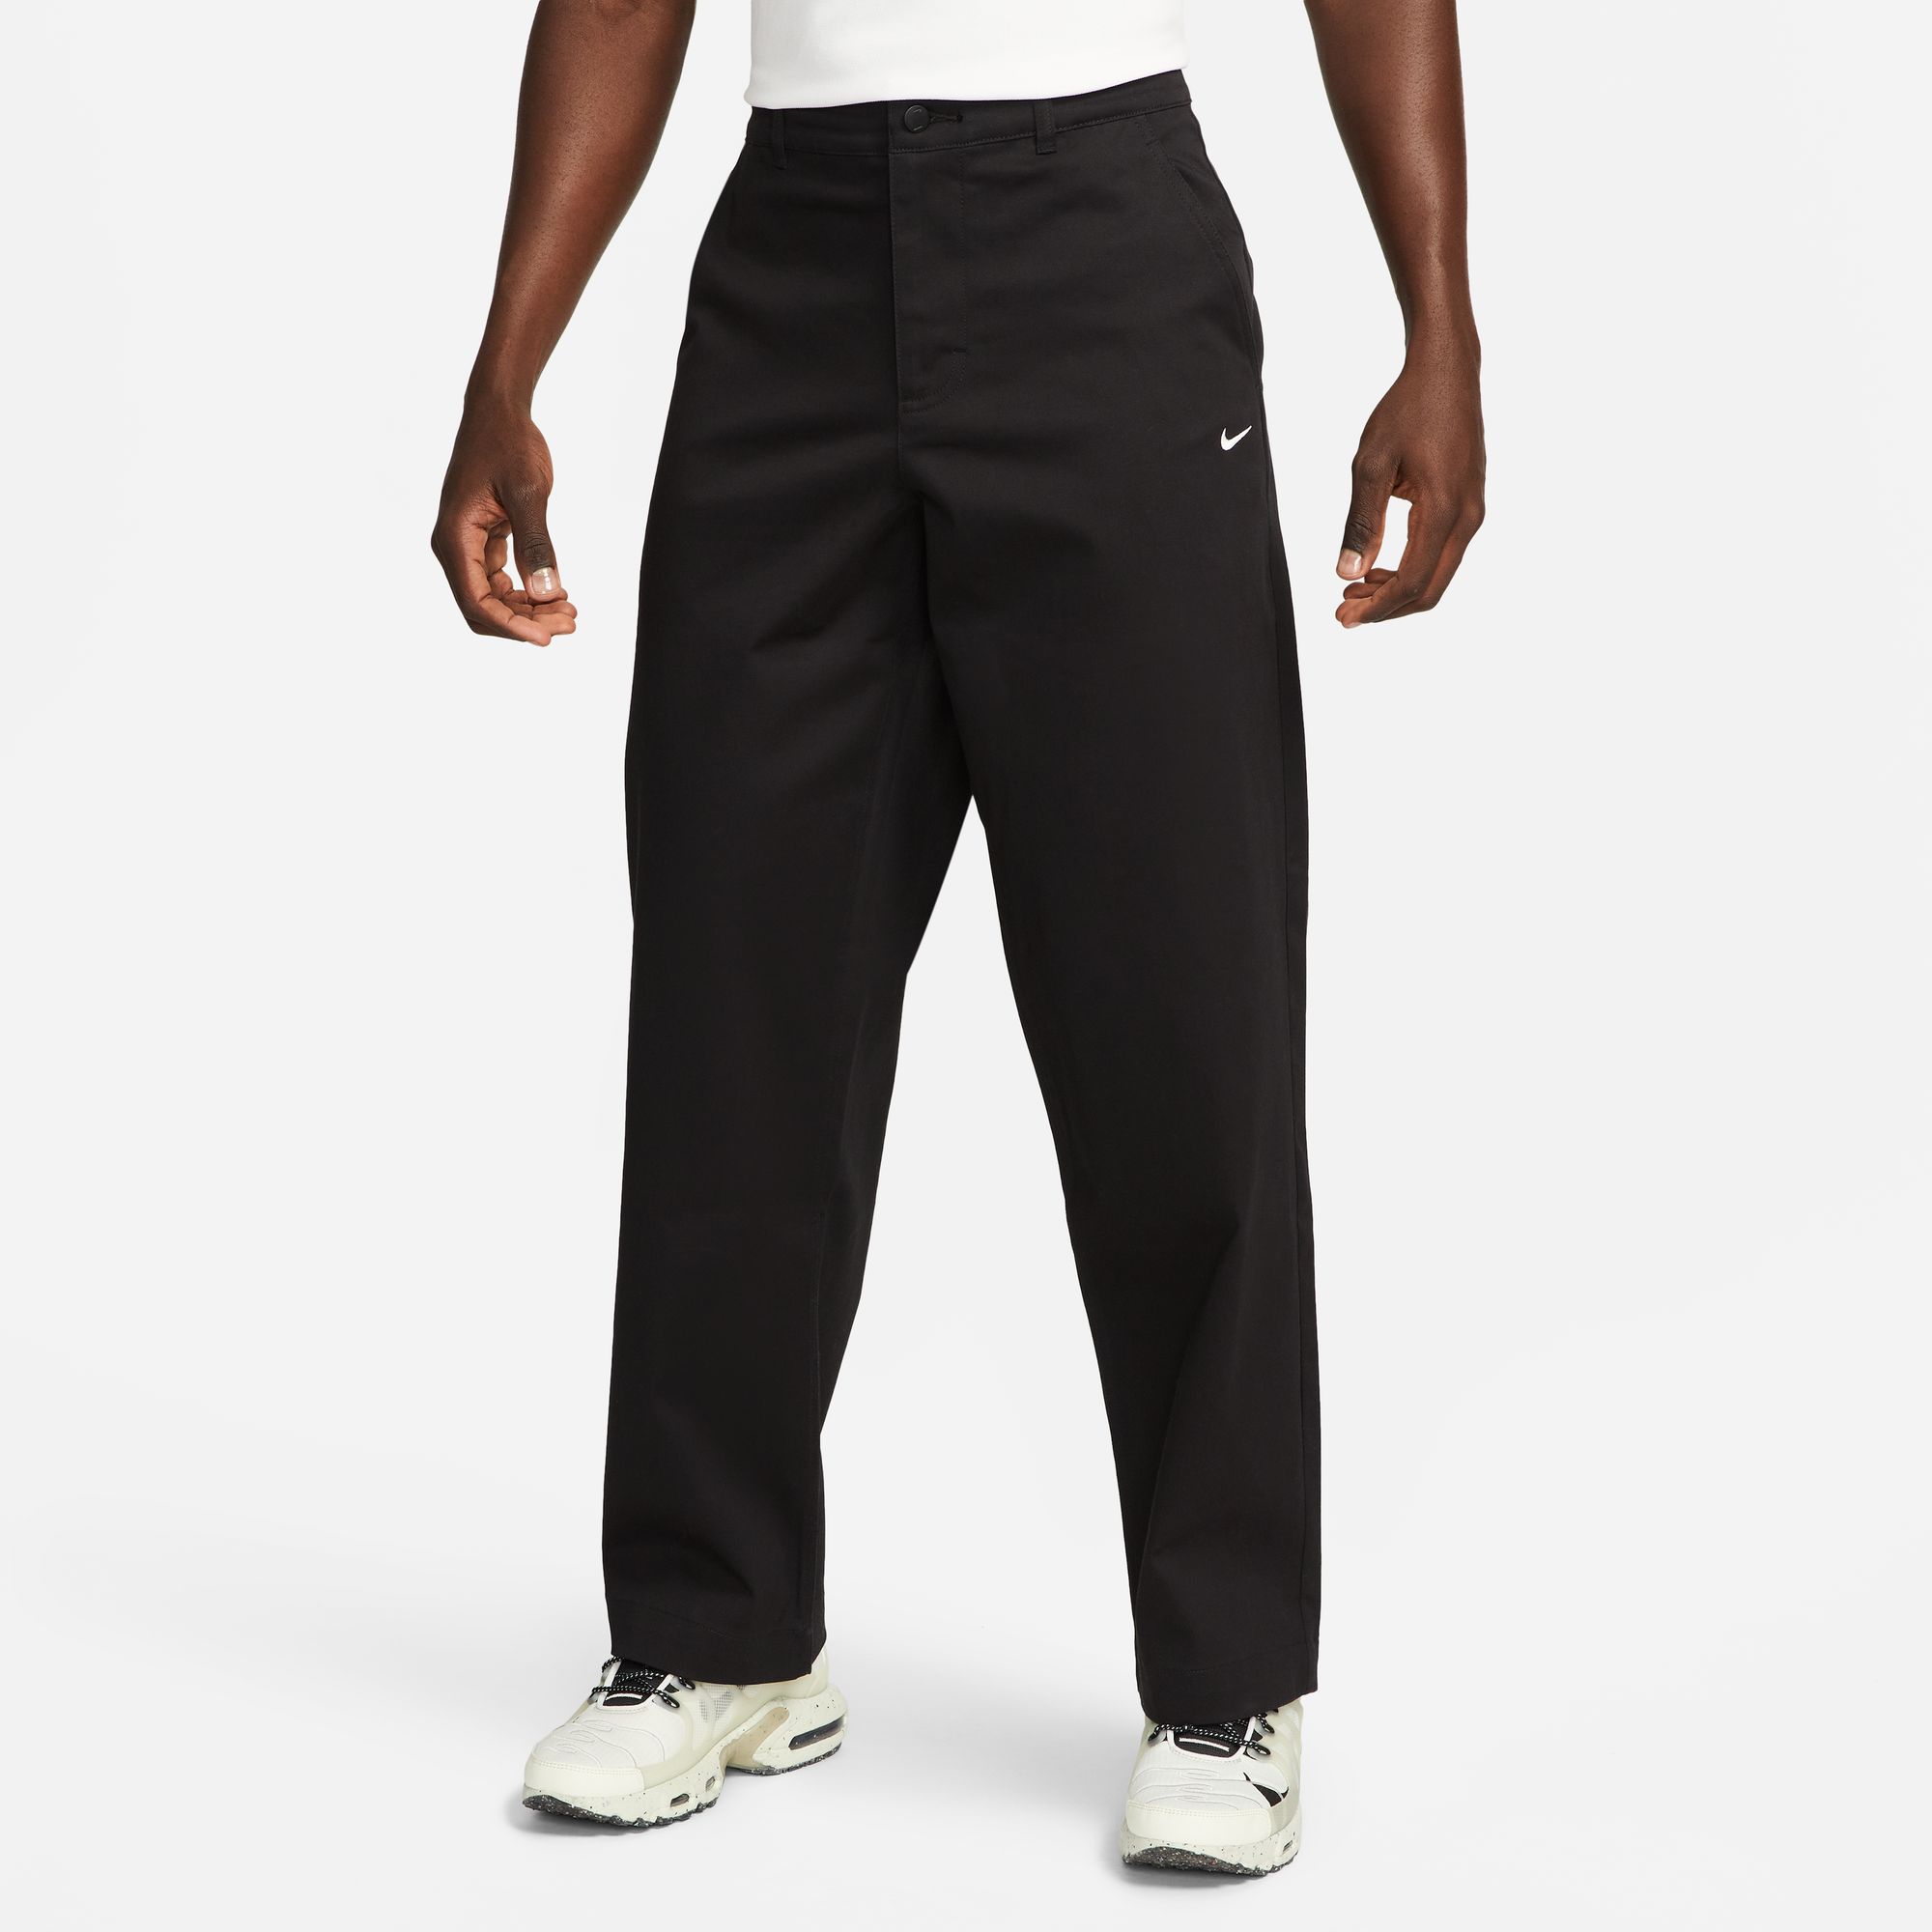 Nike SB Men's Unlined Cotton Chino Pants Black 01